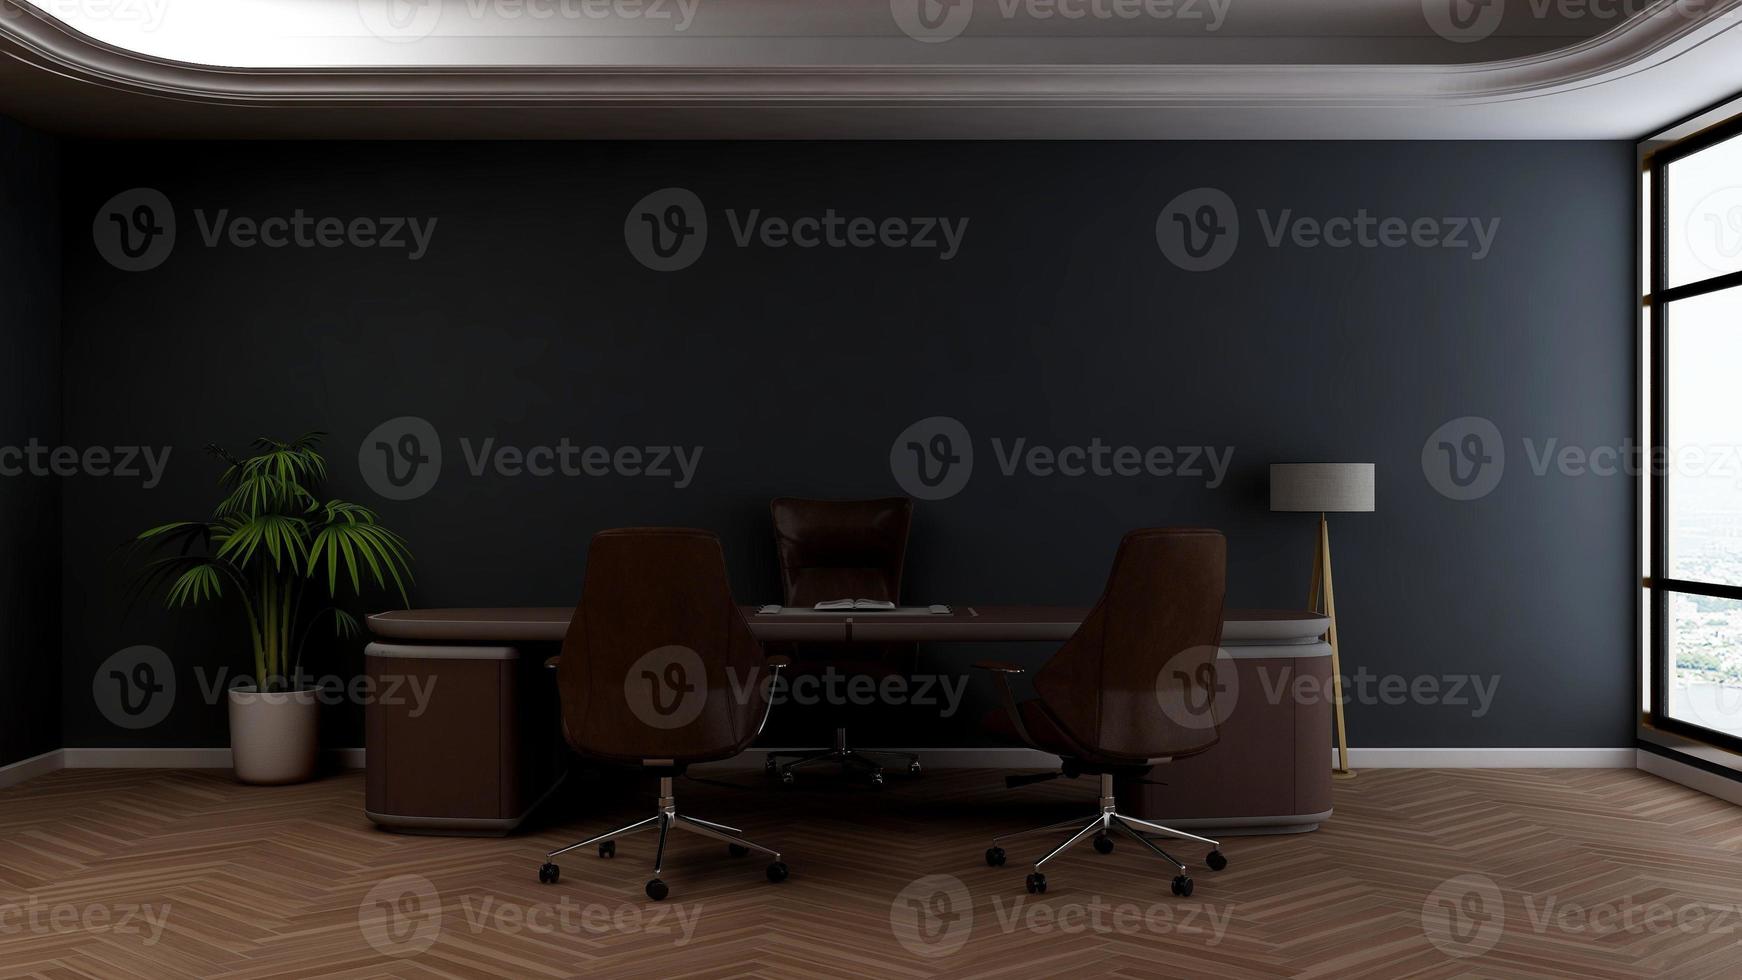 3d render modern kantoorontwerp - mockup voor de binnenmuur van de managerkamer foto